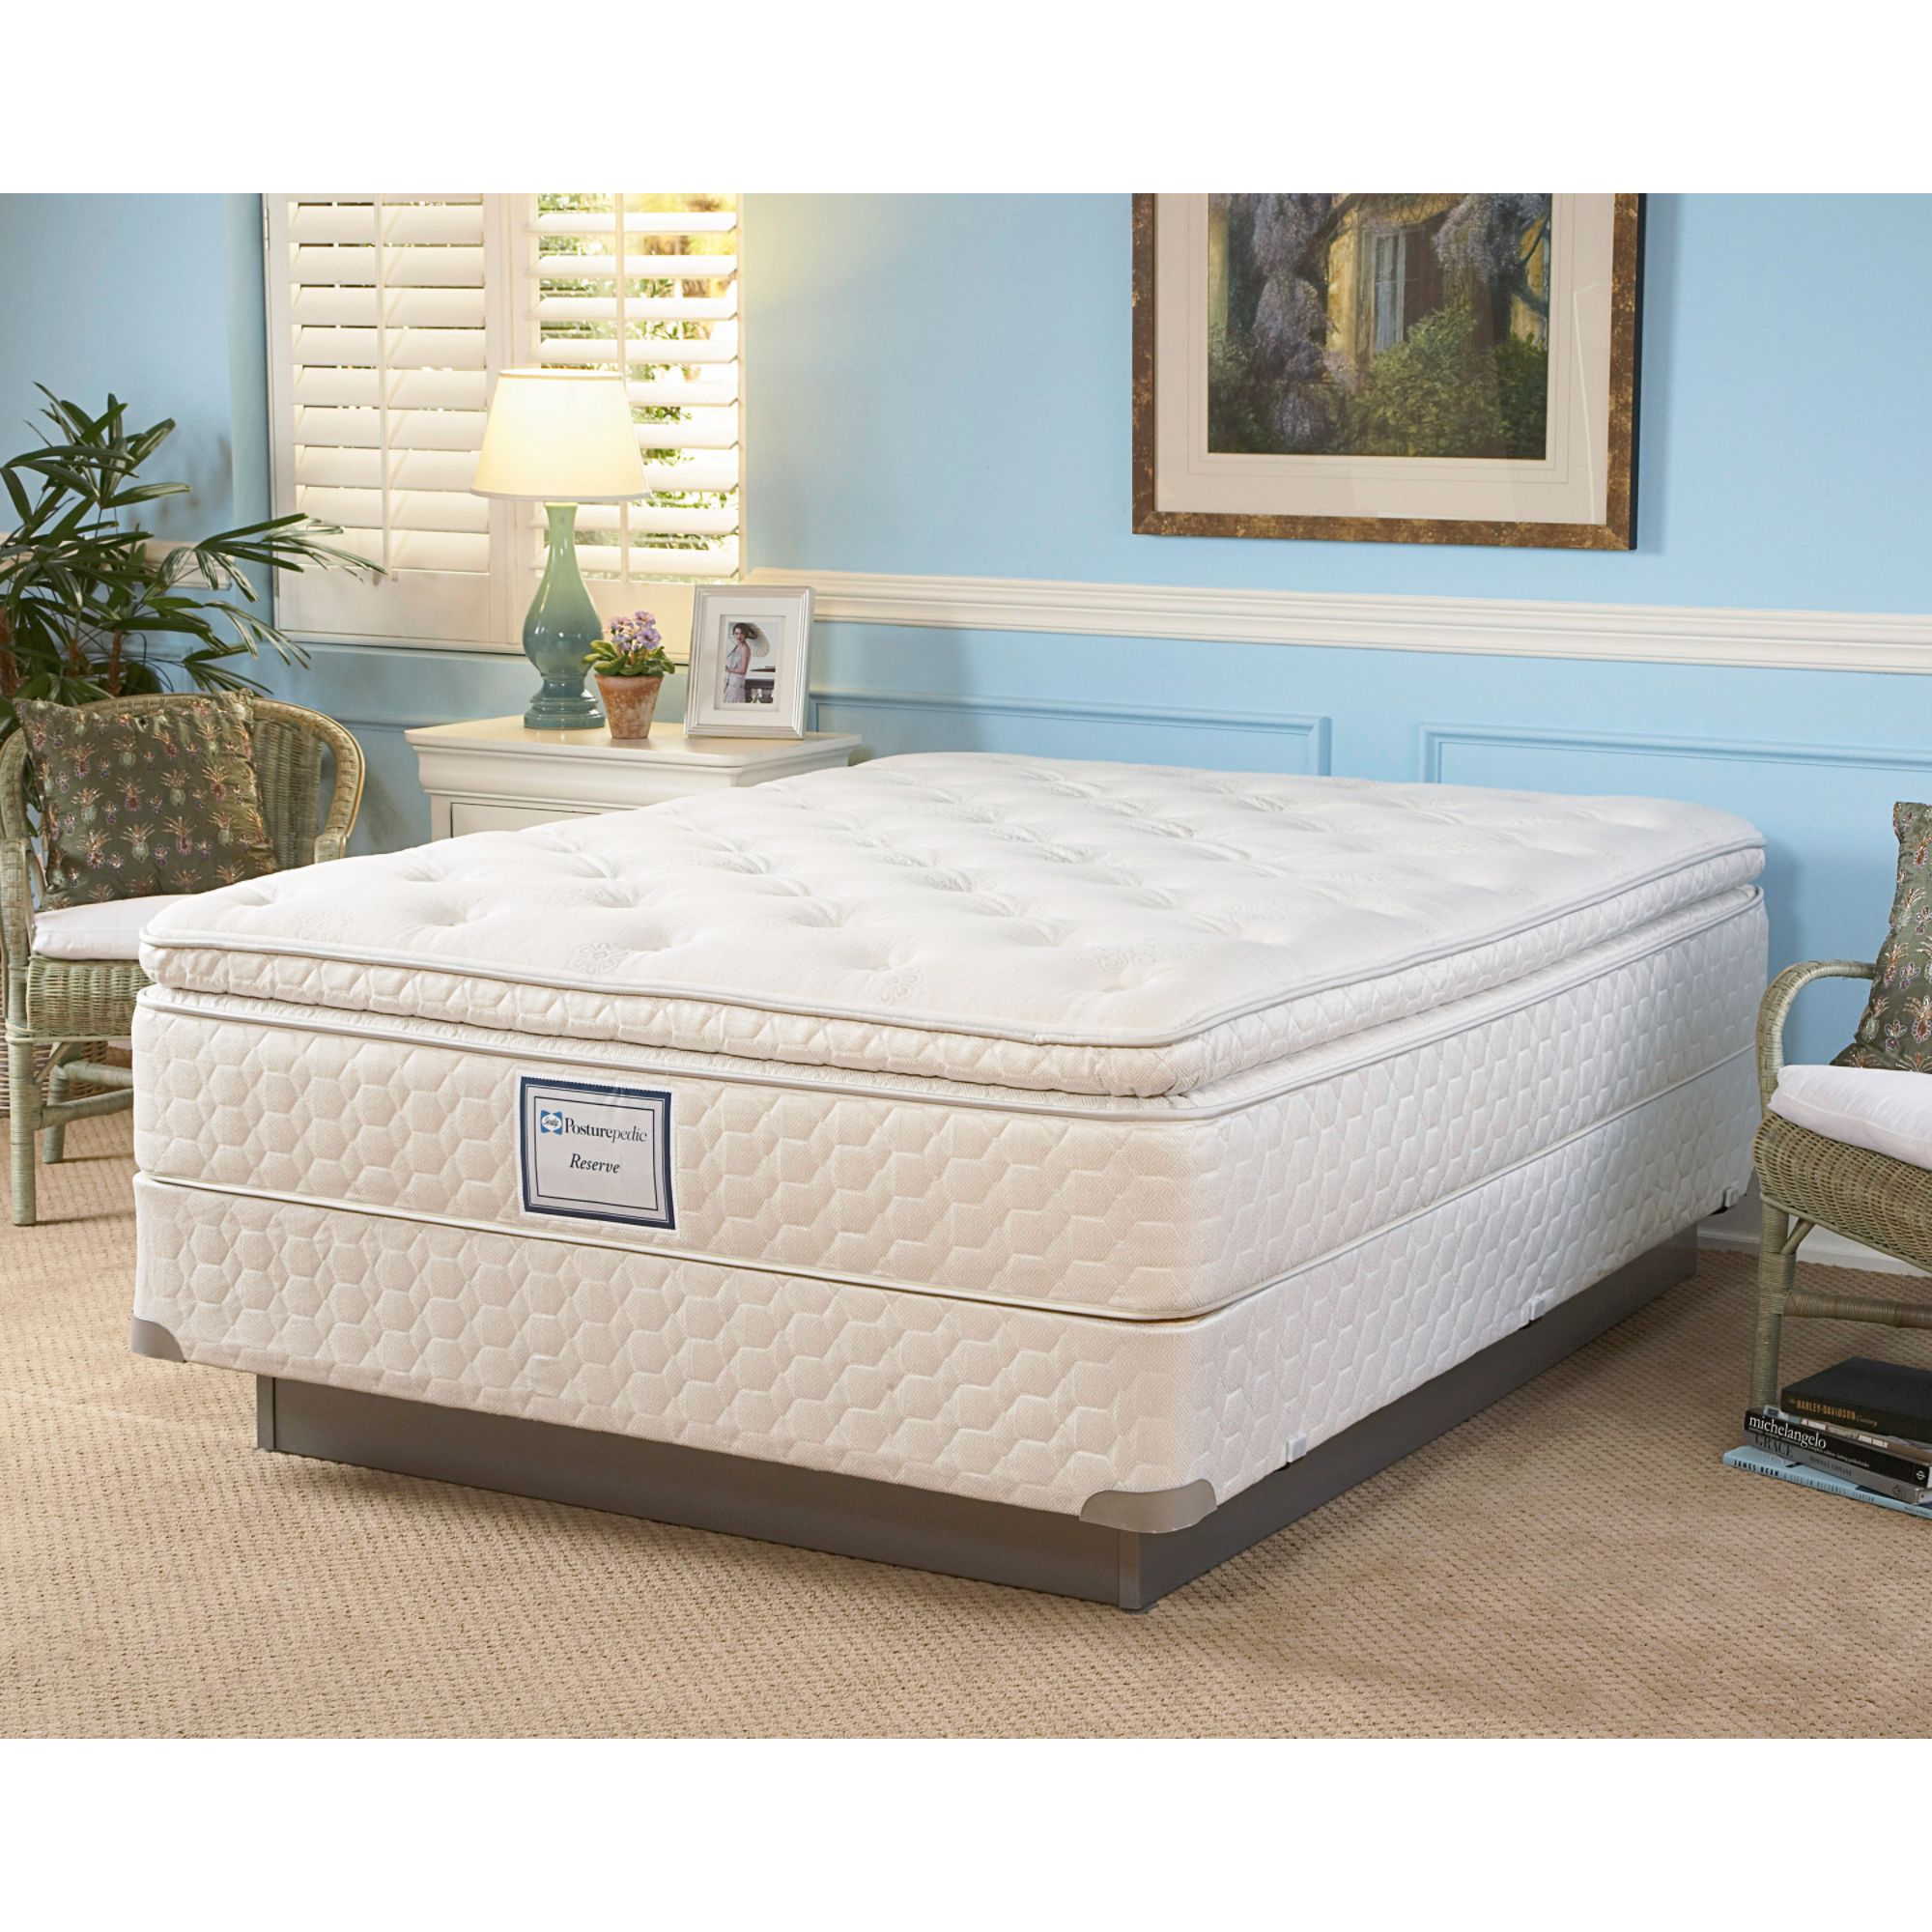 Sealy ultra plush latex mattress